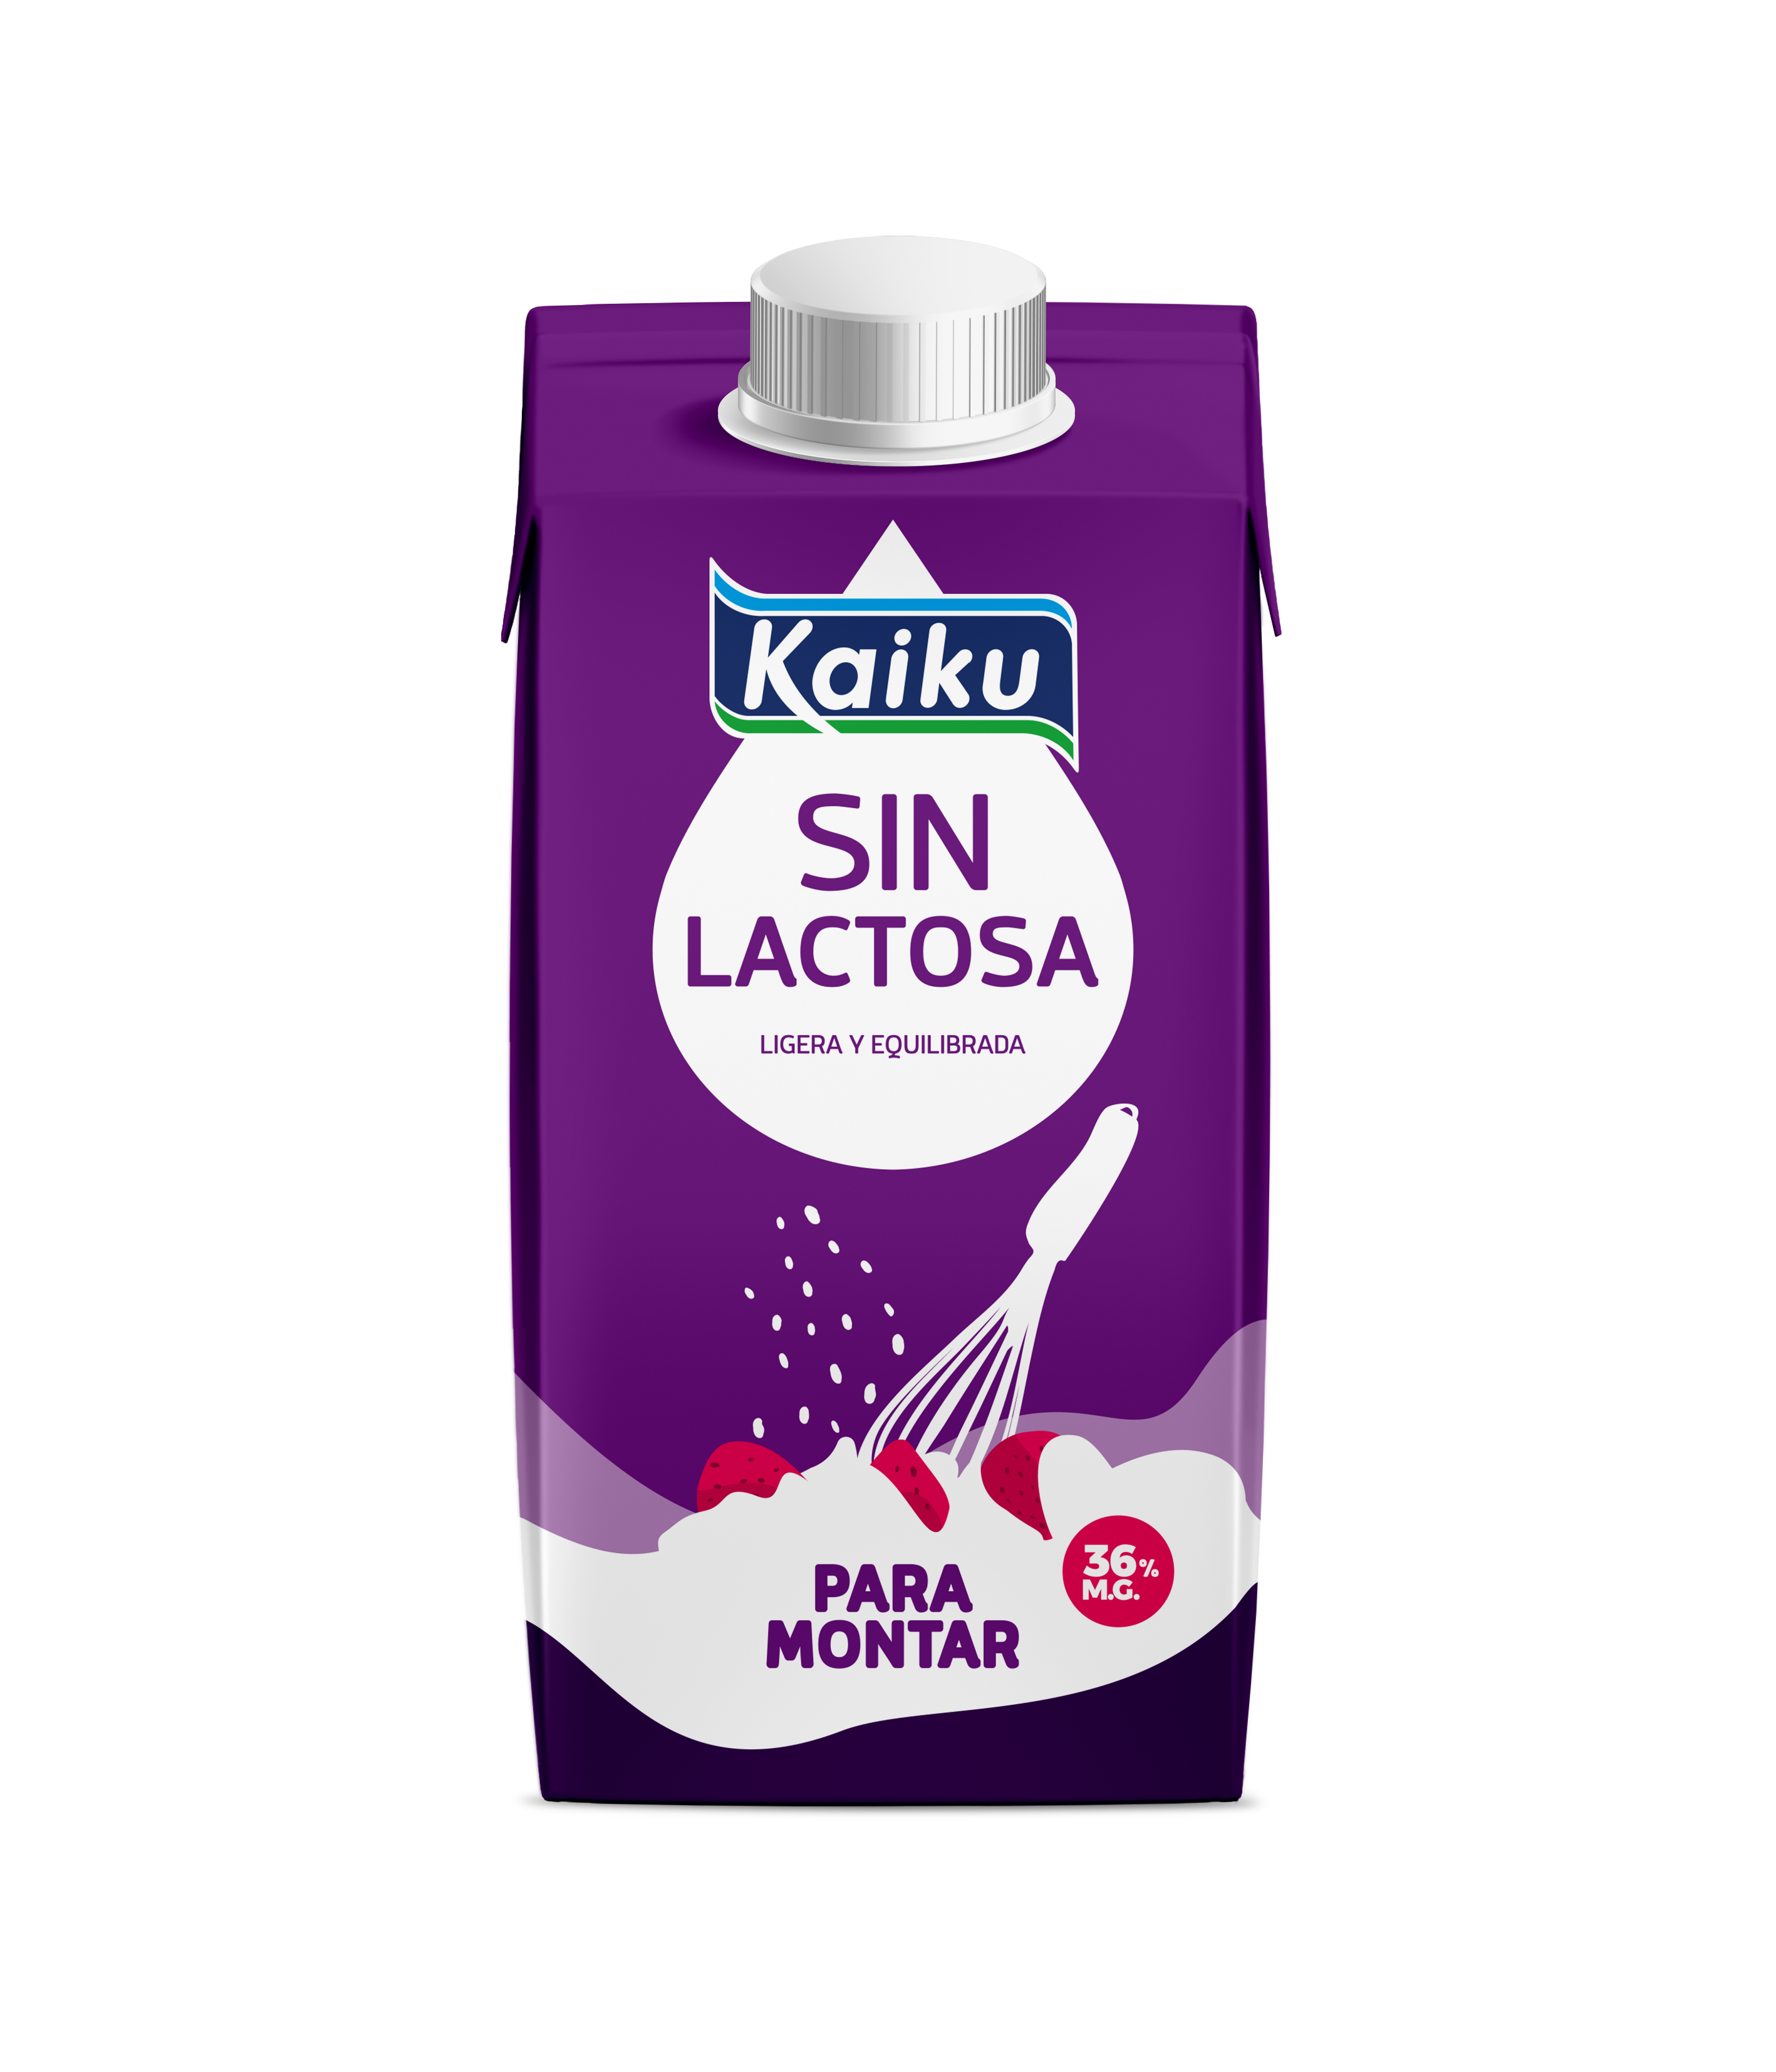 Nata para montar 36% mg Kaiku Sin Lactosa